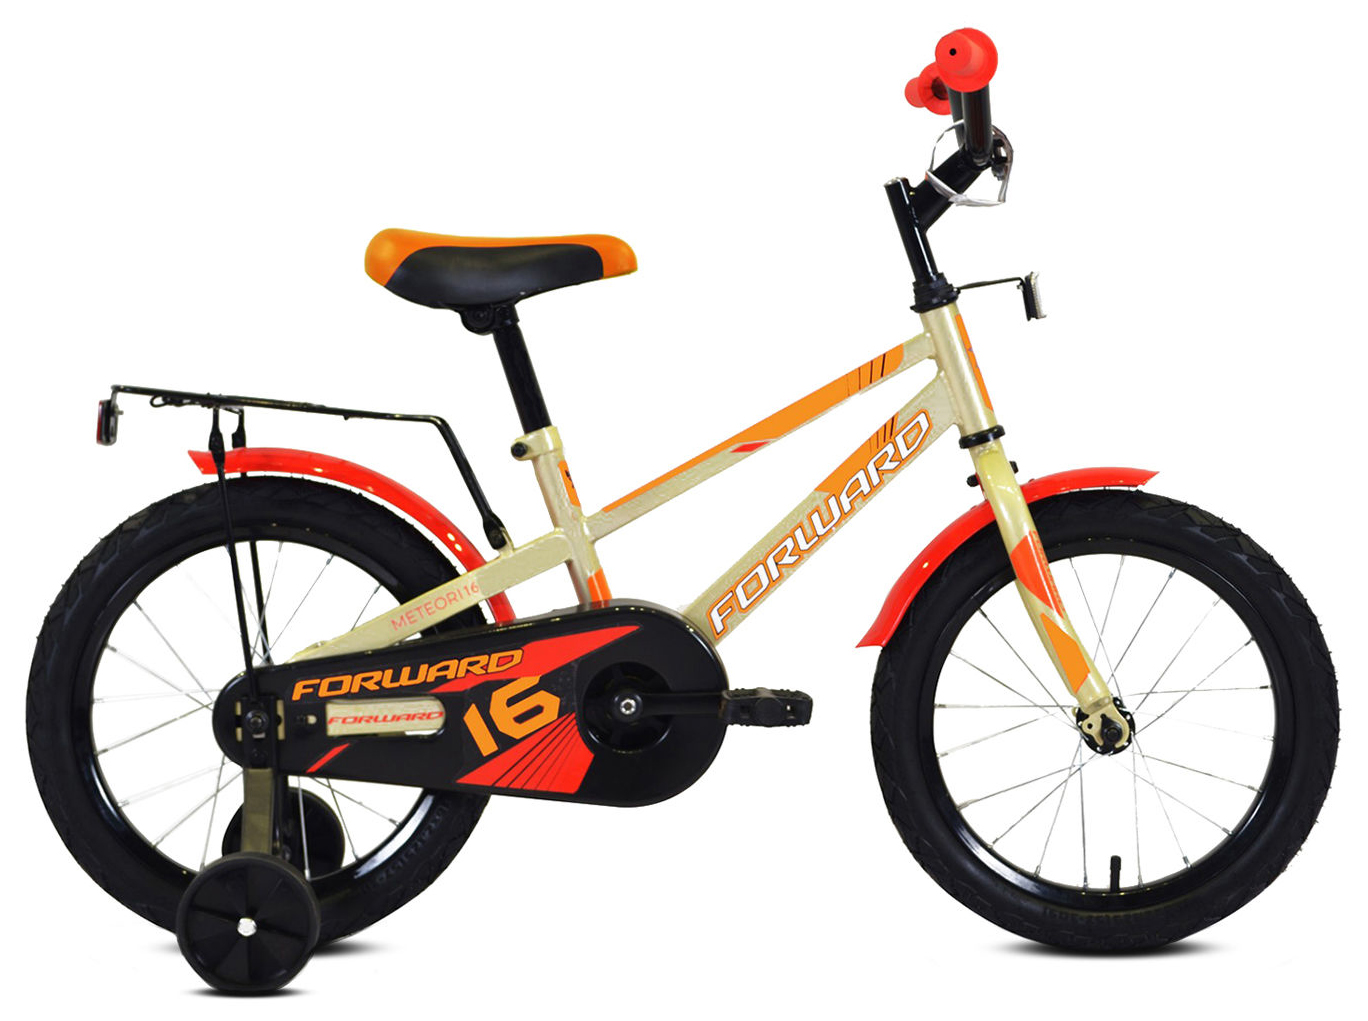  Отзывы о Детском велосипеде Forward Meteor 14 2020